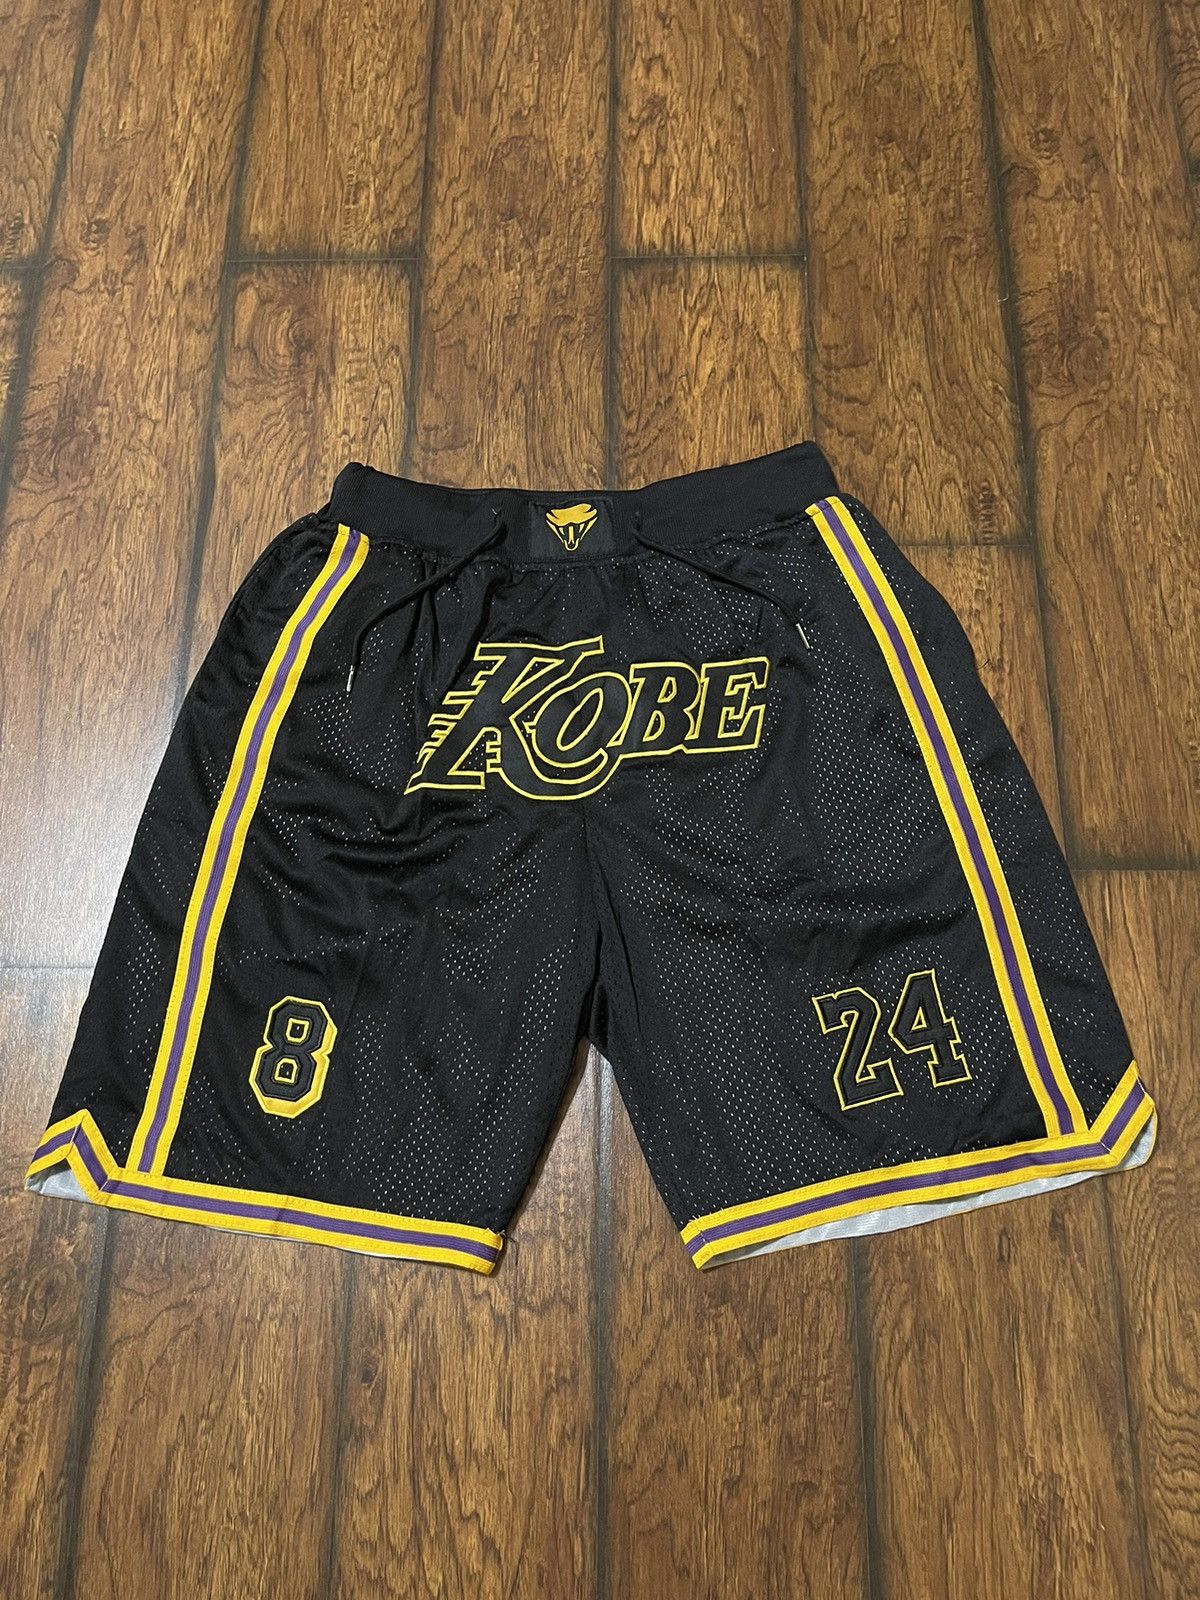 New w/tags Just Don Lakers Shorts Size XL Nba Basketball Kobe